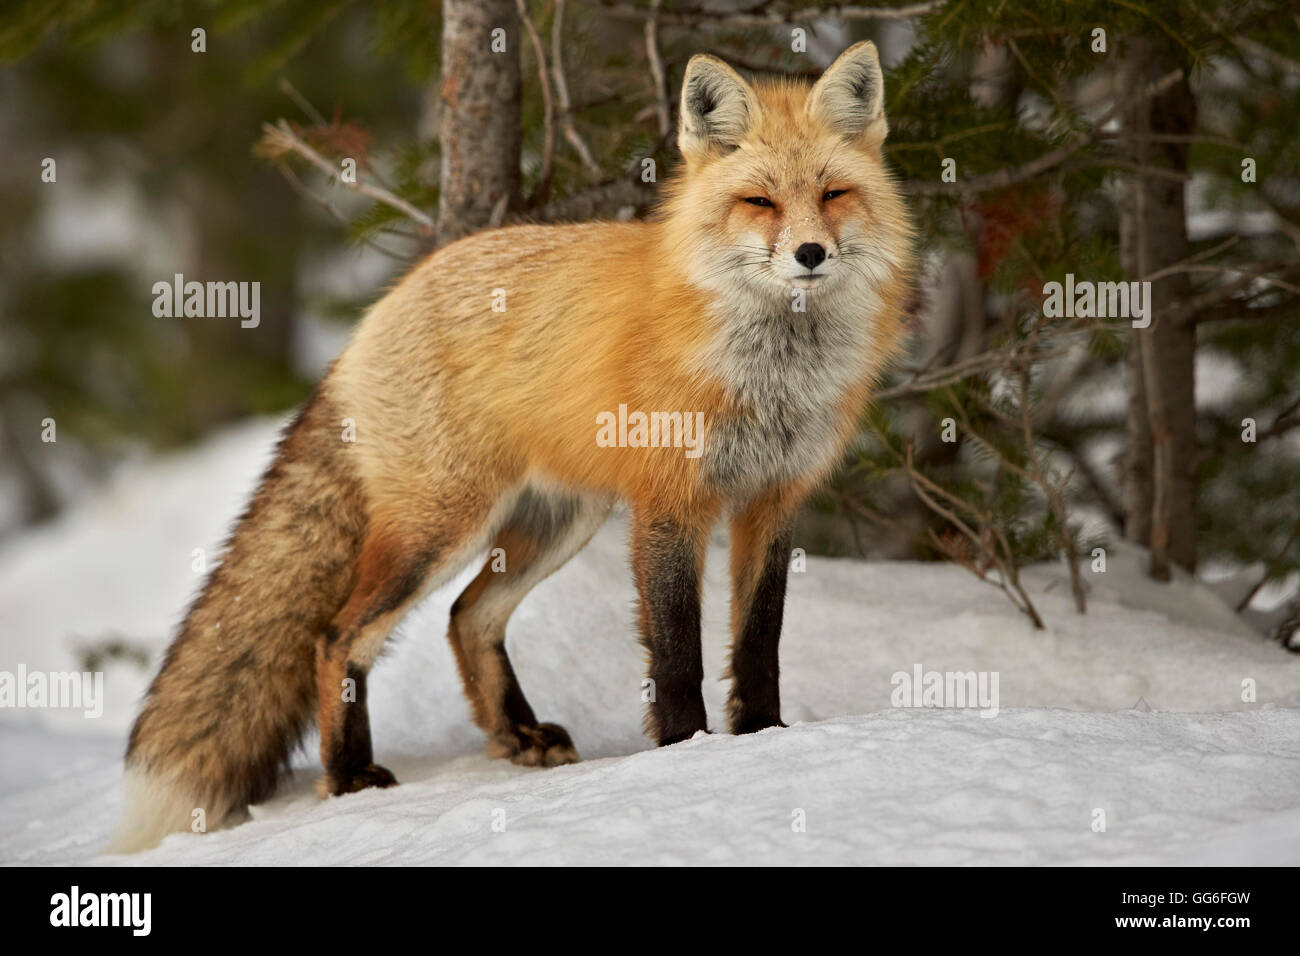 Le renard roux (Vulpes vulpes) (Vulpes fulva) en hiver, parc national de Grand Teton, Wyoming, États-Unis d'Amérique, Amérique du Nord Banque D'Images